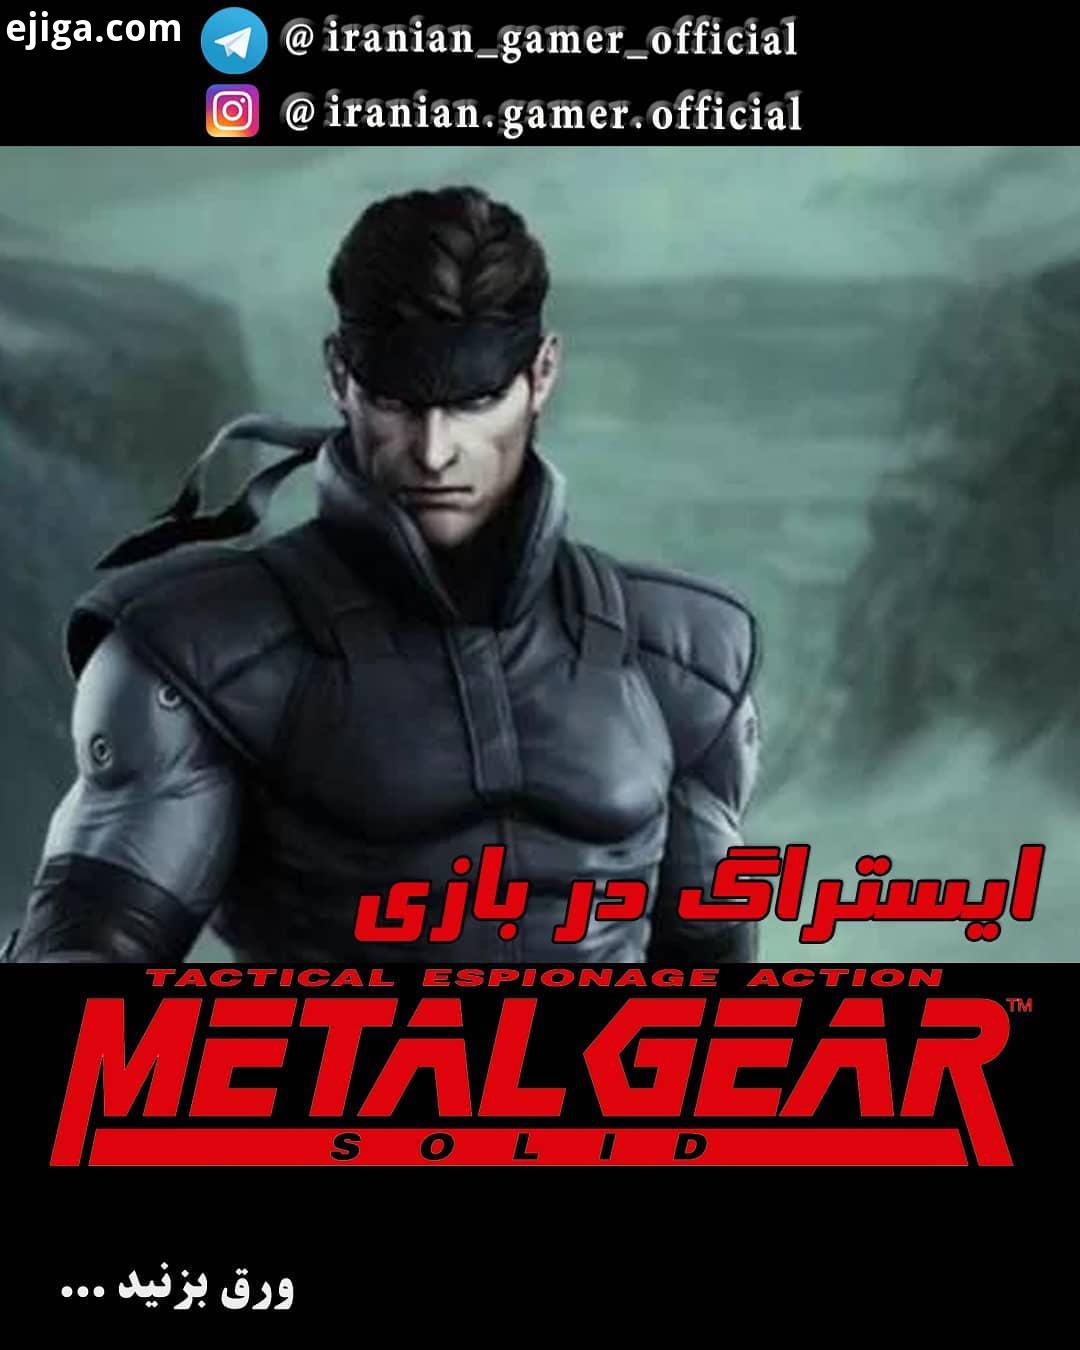 ایستراگ در بازی Metal Gear Solid نکته: ویدیوی این پست از نسخه Metal Gear Solid Twin Snake می باشد که